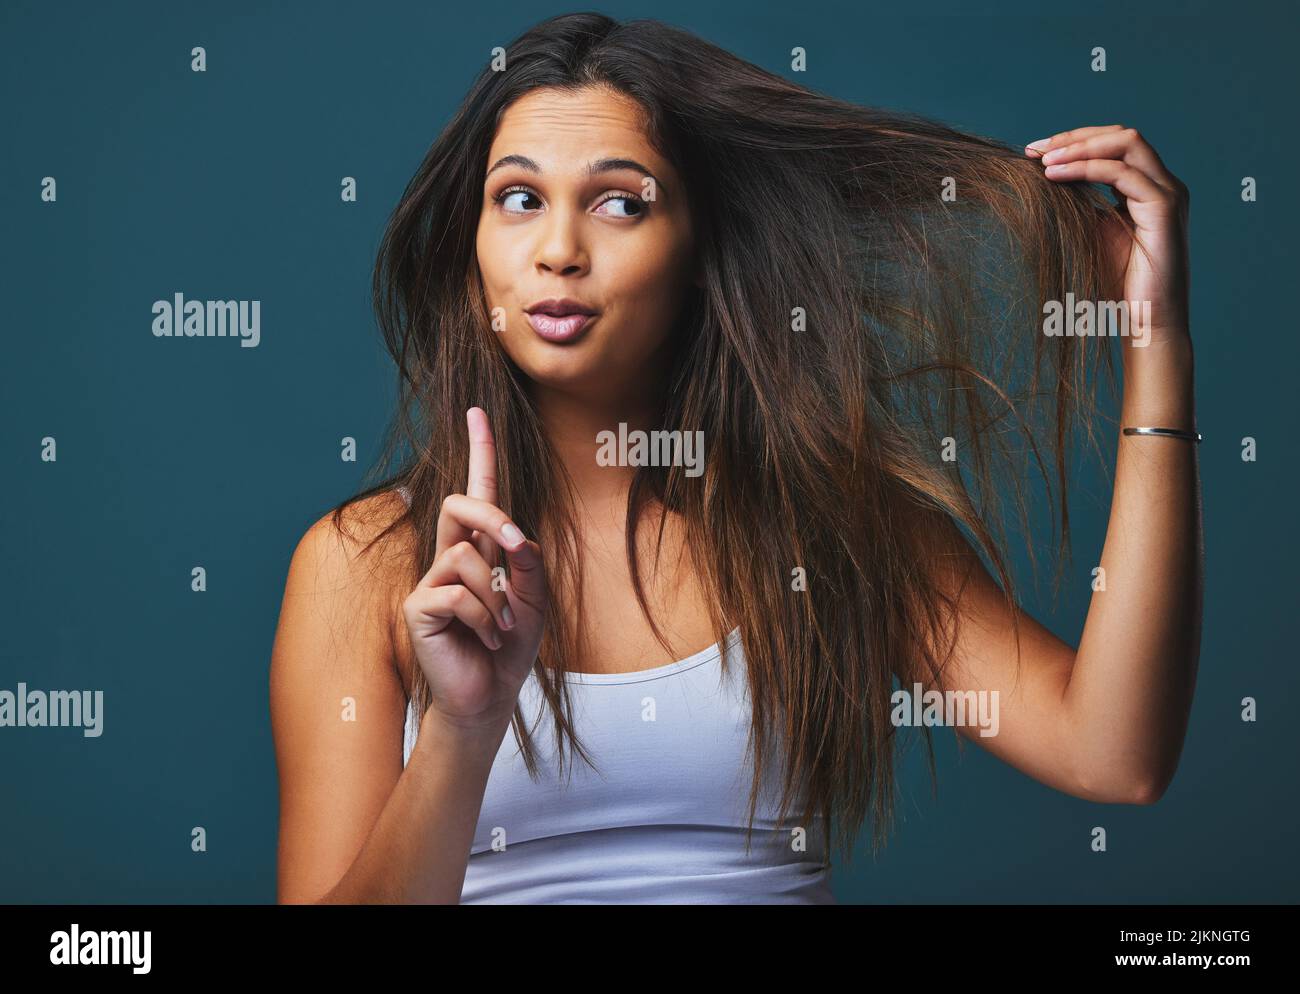 Neugier, der Motor des Erzielens. Studioaufnahme einer schönen jungen Frau mit dem Finger nach oben, der vor blauem Hintergrund posiert. Stockfoto